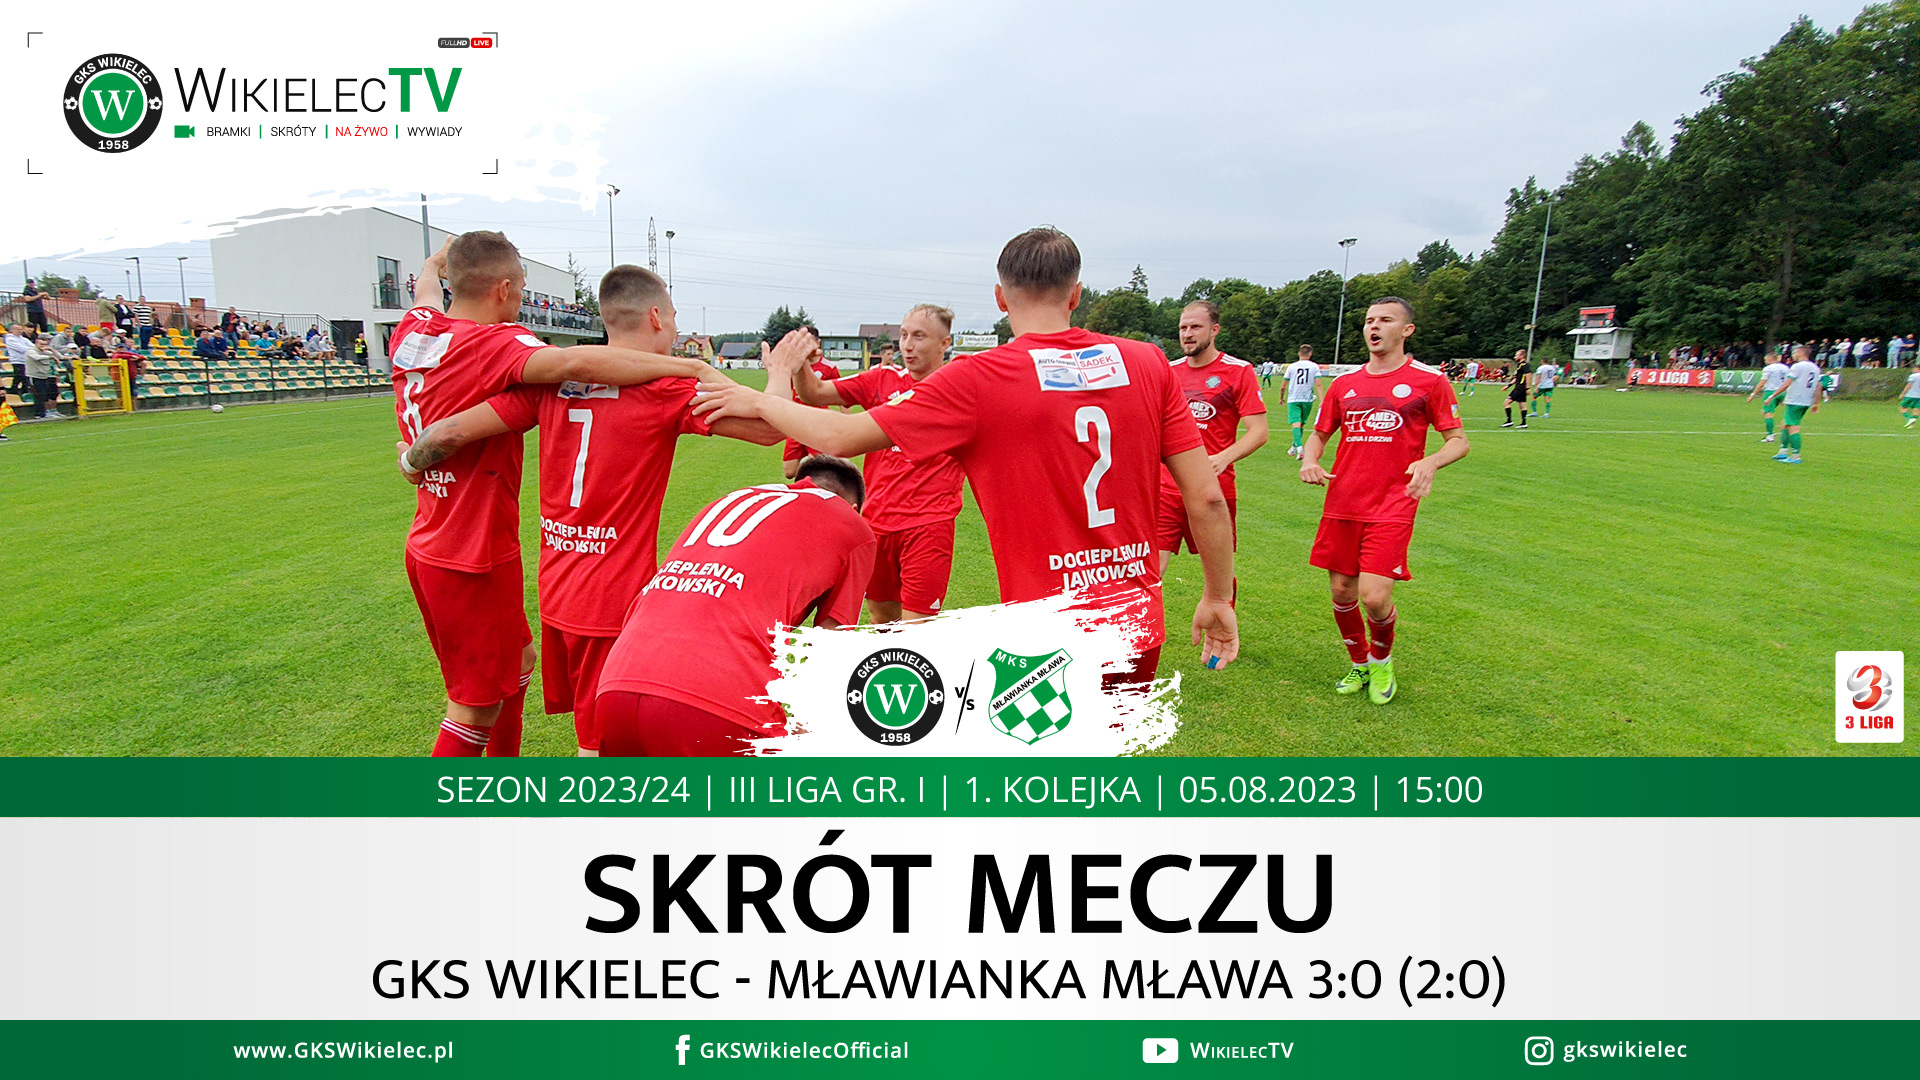 WikielecTV: Skrót meczu GKS Wikielec - Mławianka Mława 3:0 (2:0)